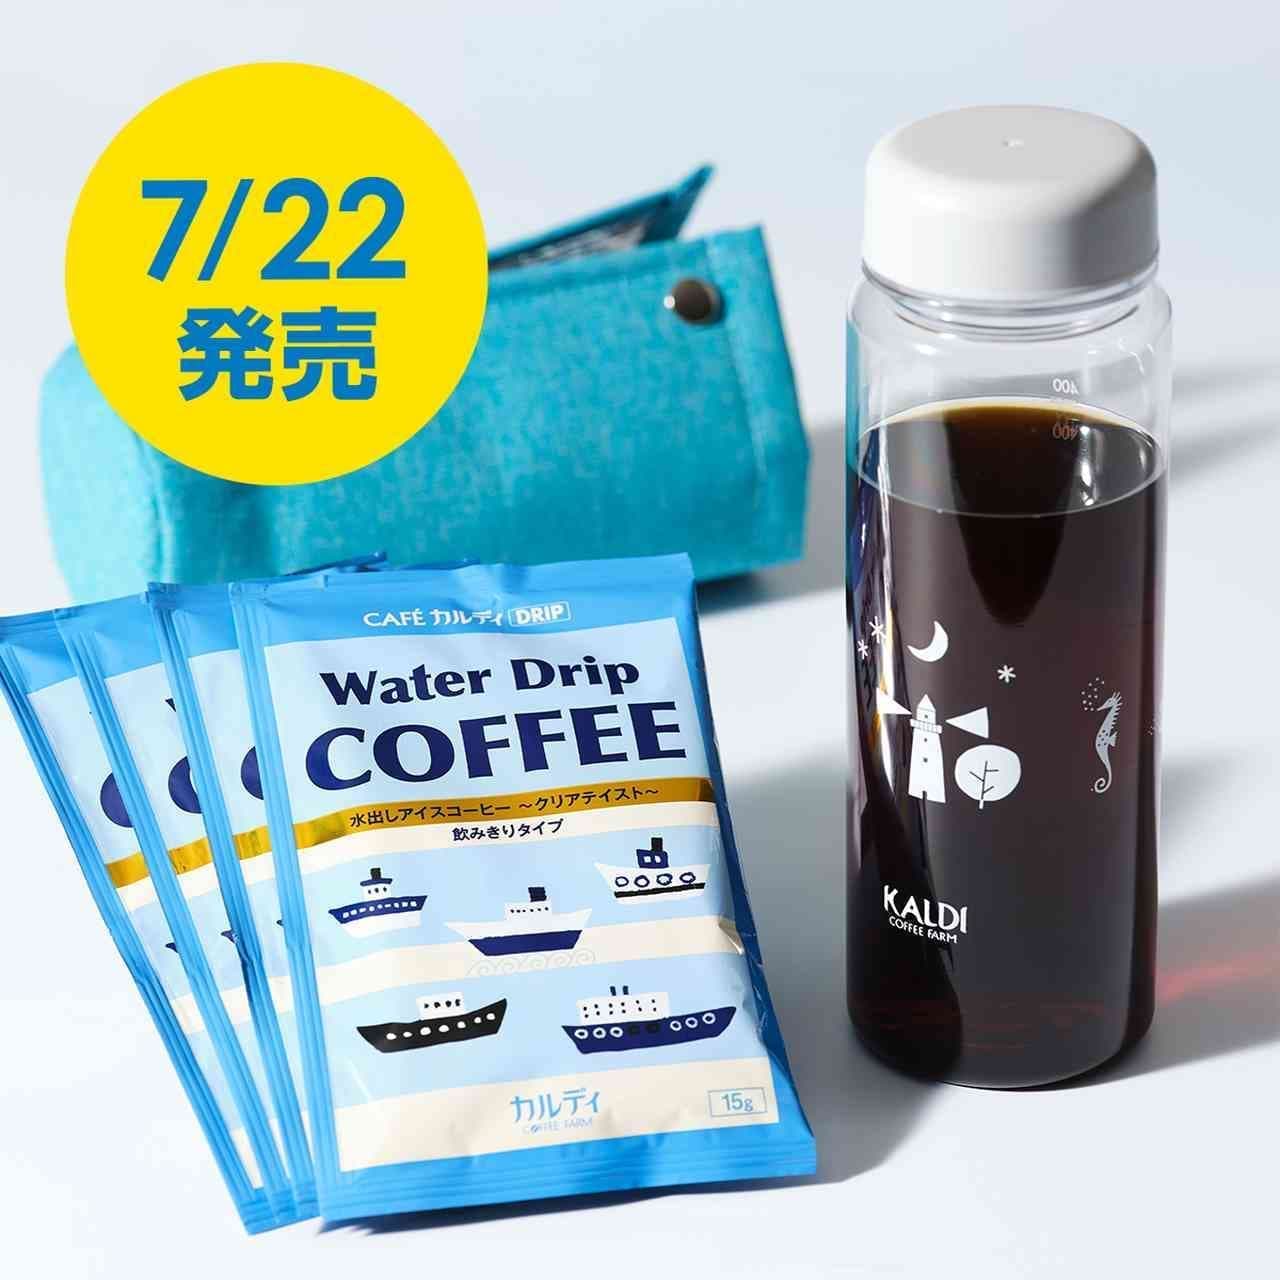 KALDI "Water Drip Coffee & Clear Bottle Set"